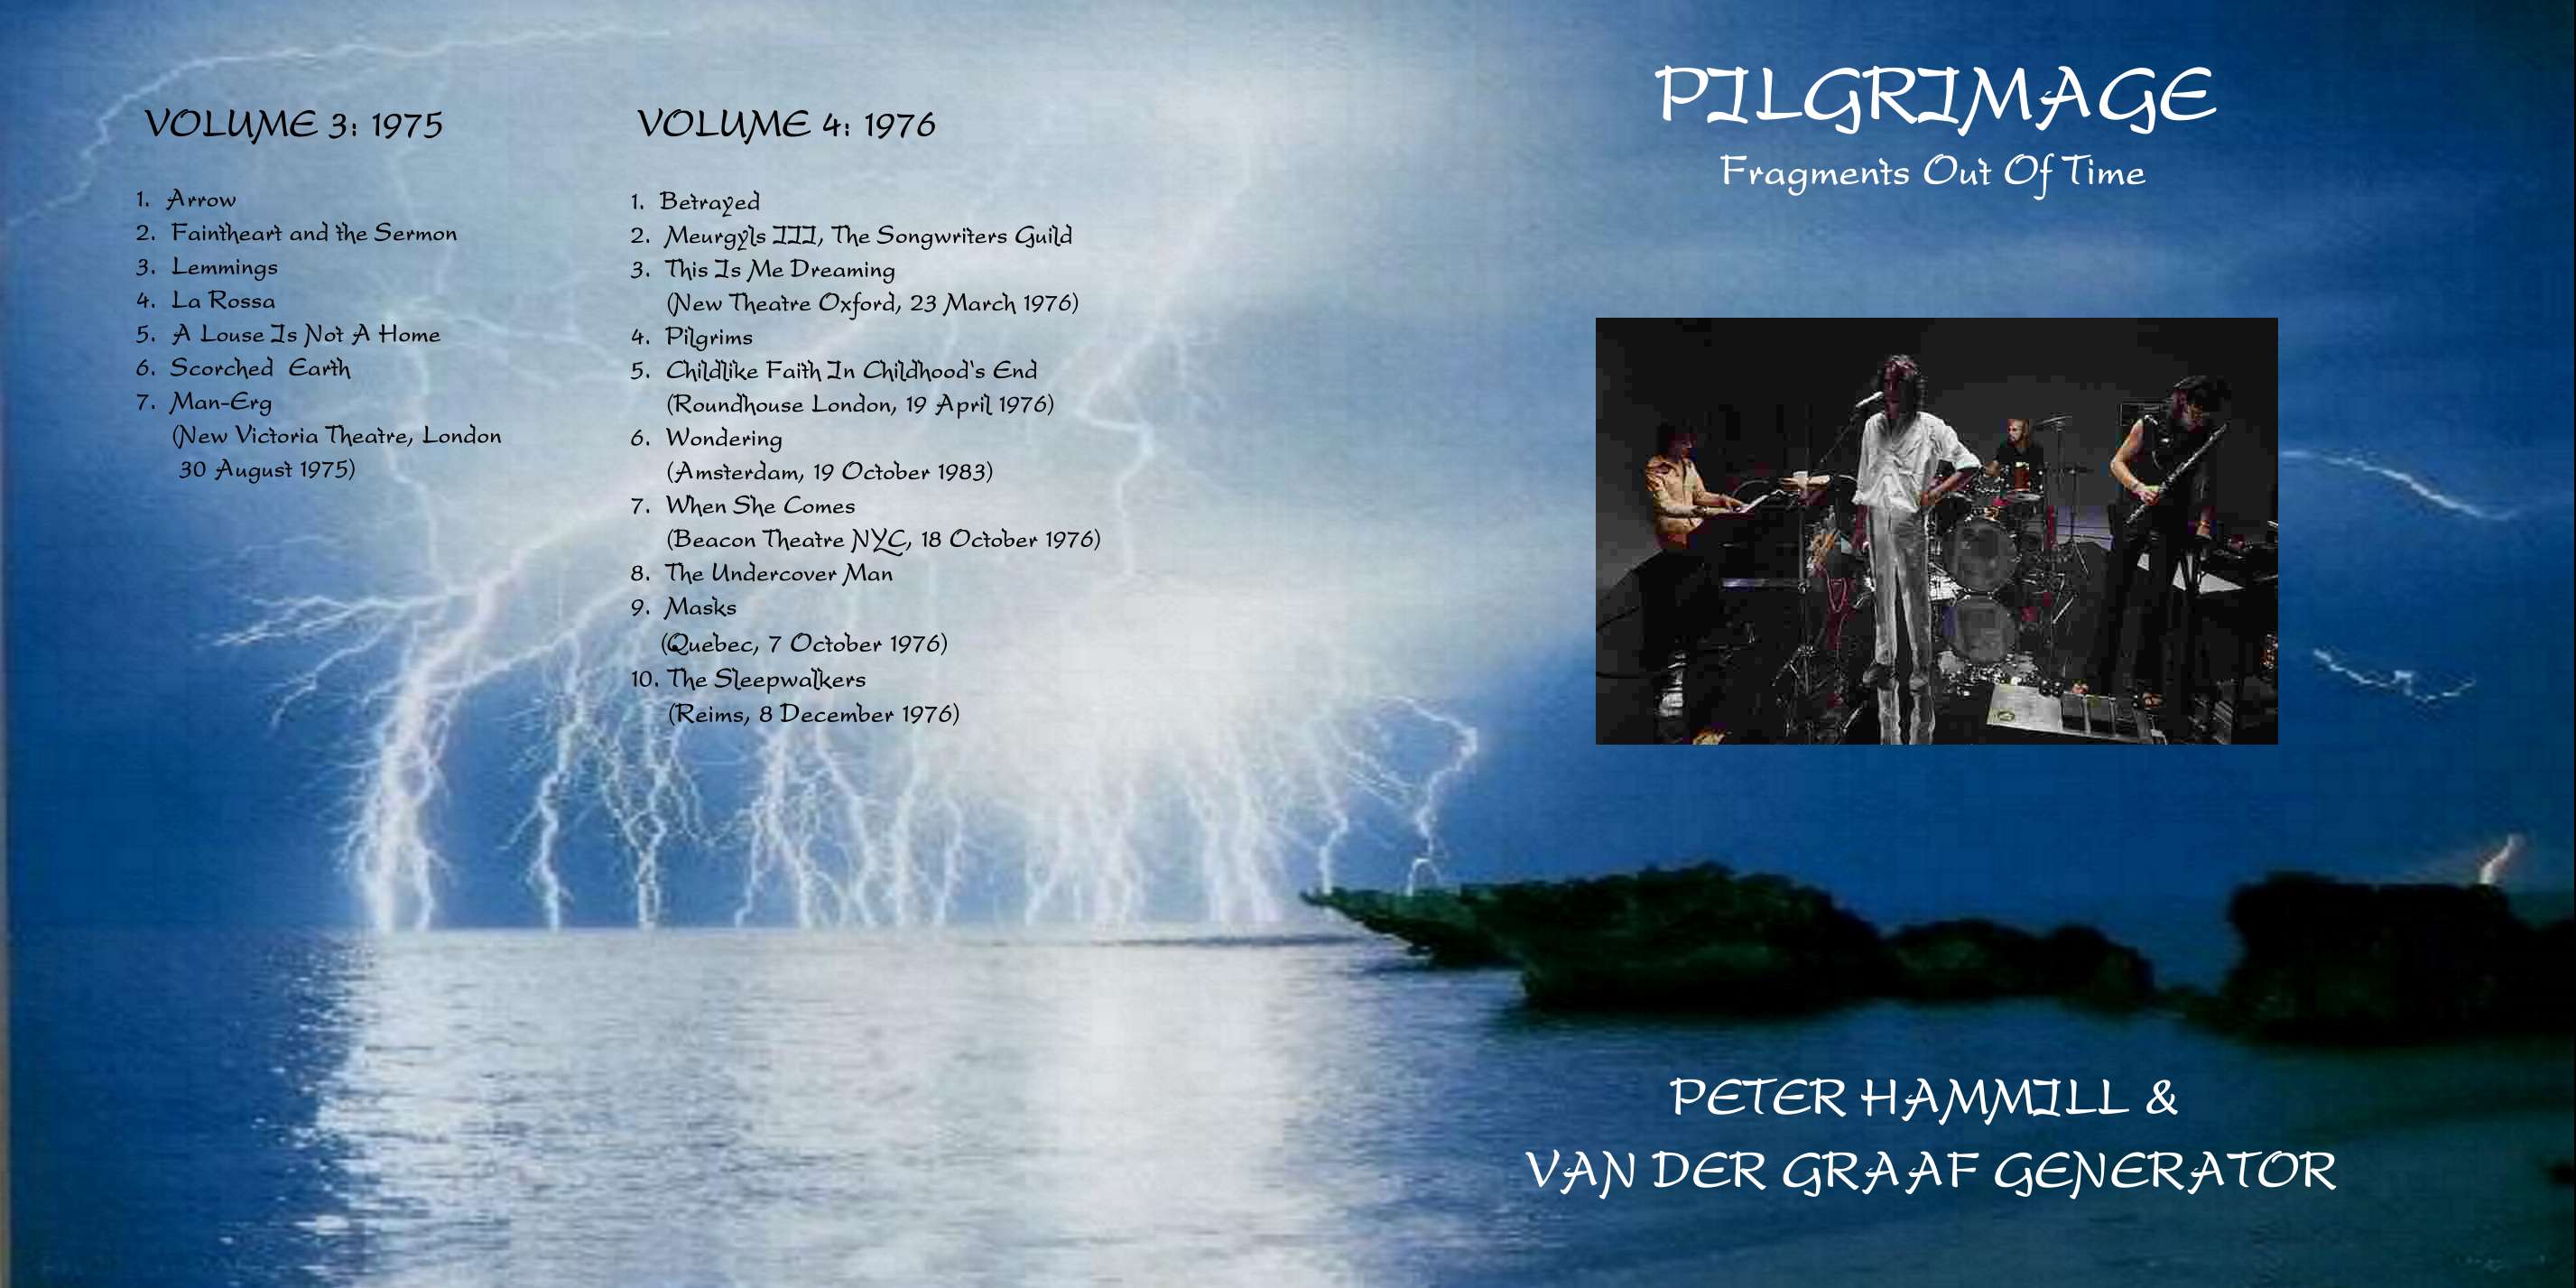 VanDerGraafGeneratorPeterHammill1970-1986Pilgrimage_pt2 (5).jpg